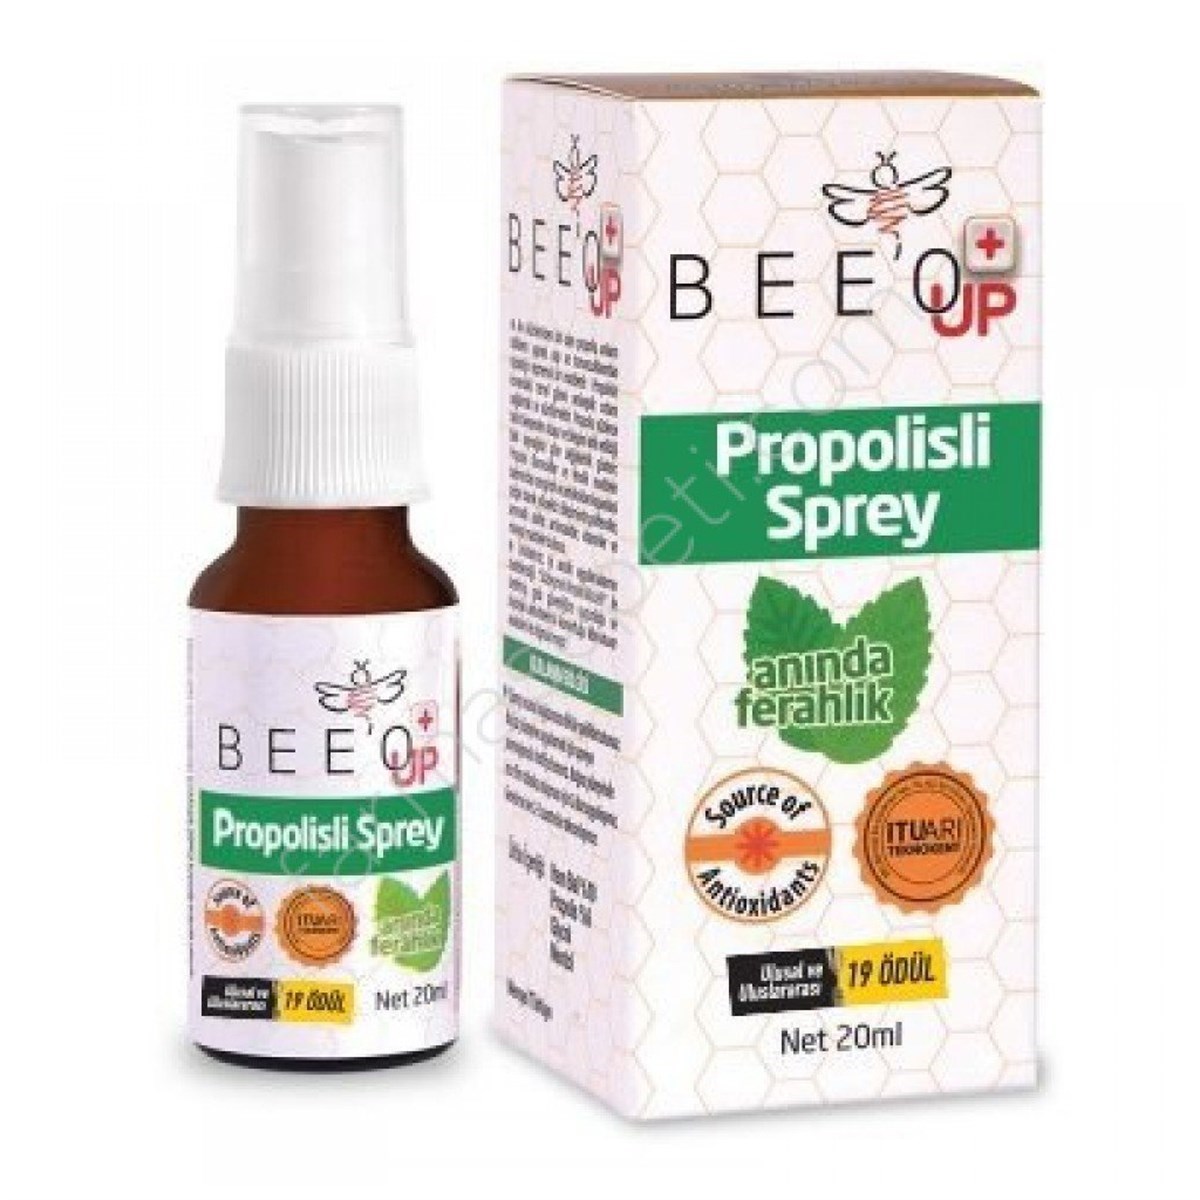 Bee'o Up Propolisli Sprey 20 ml | ozekpharma.com